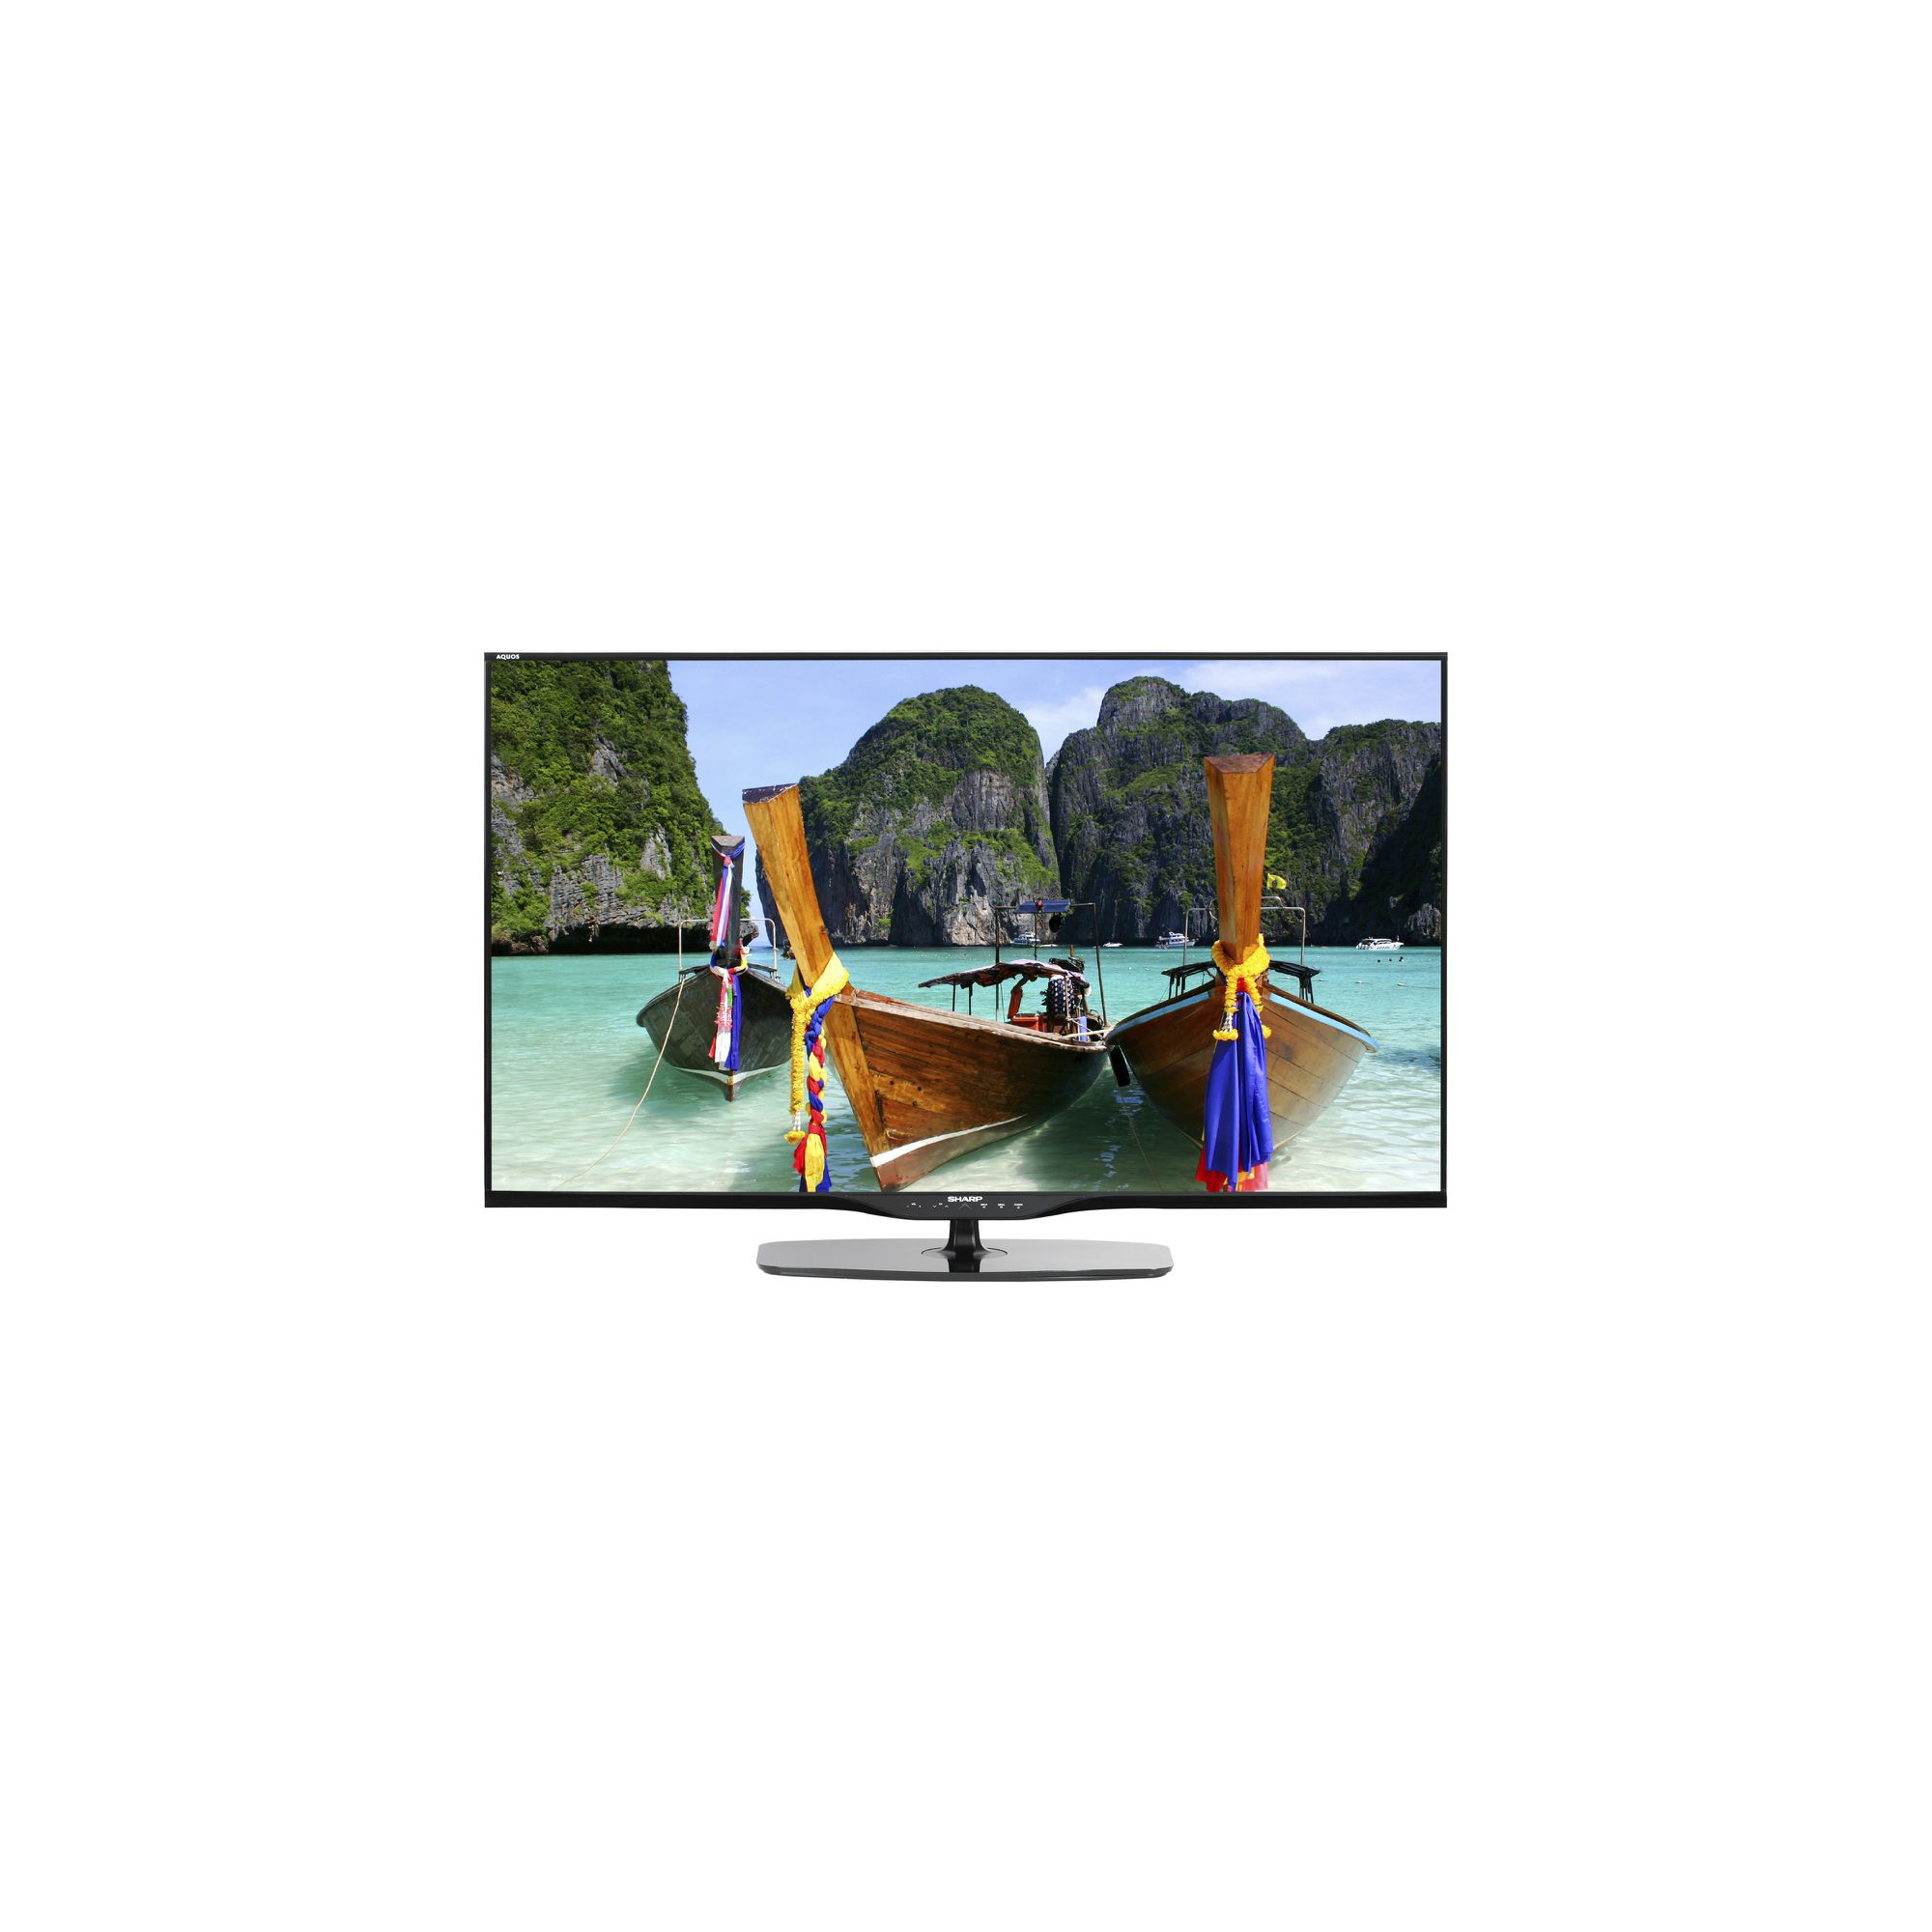 Sharp AQUOS LE351 39” Full HD LED TV